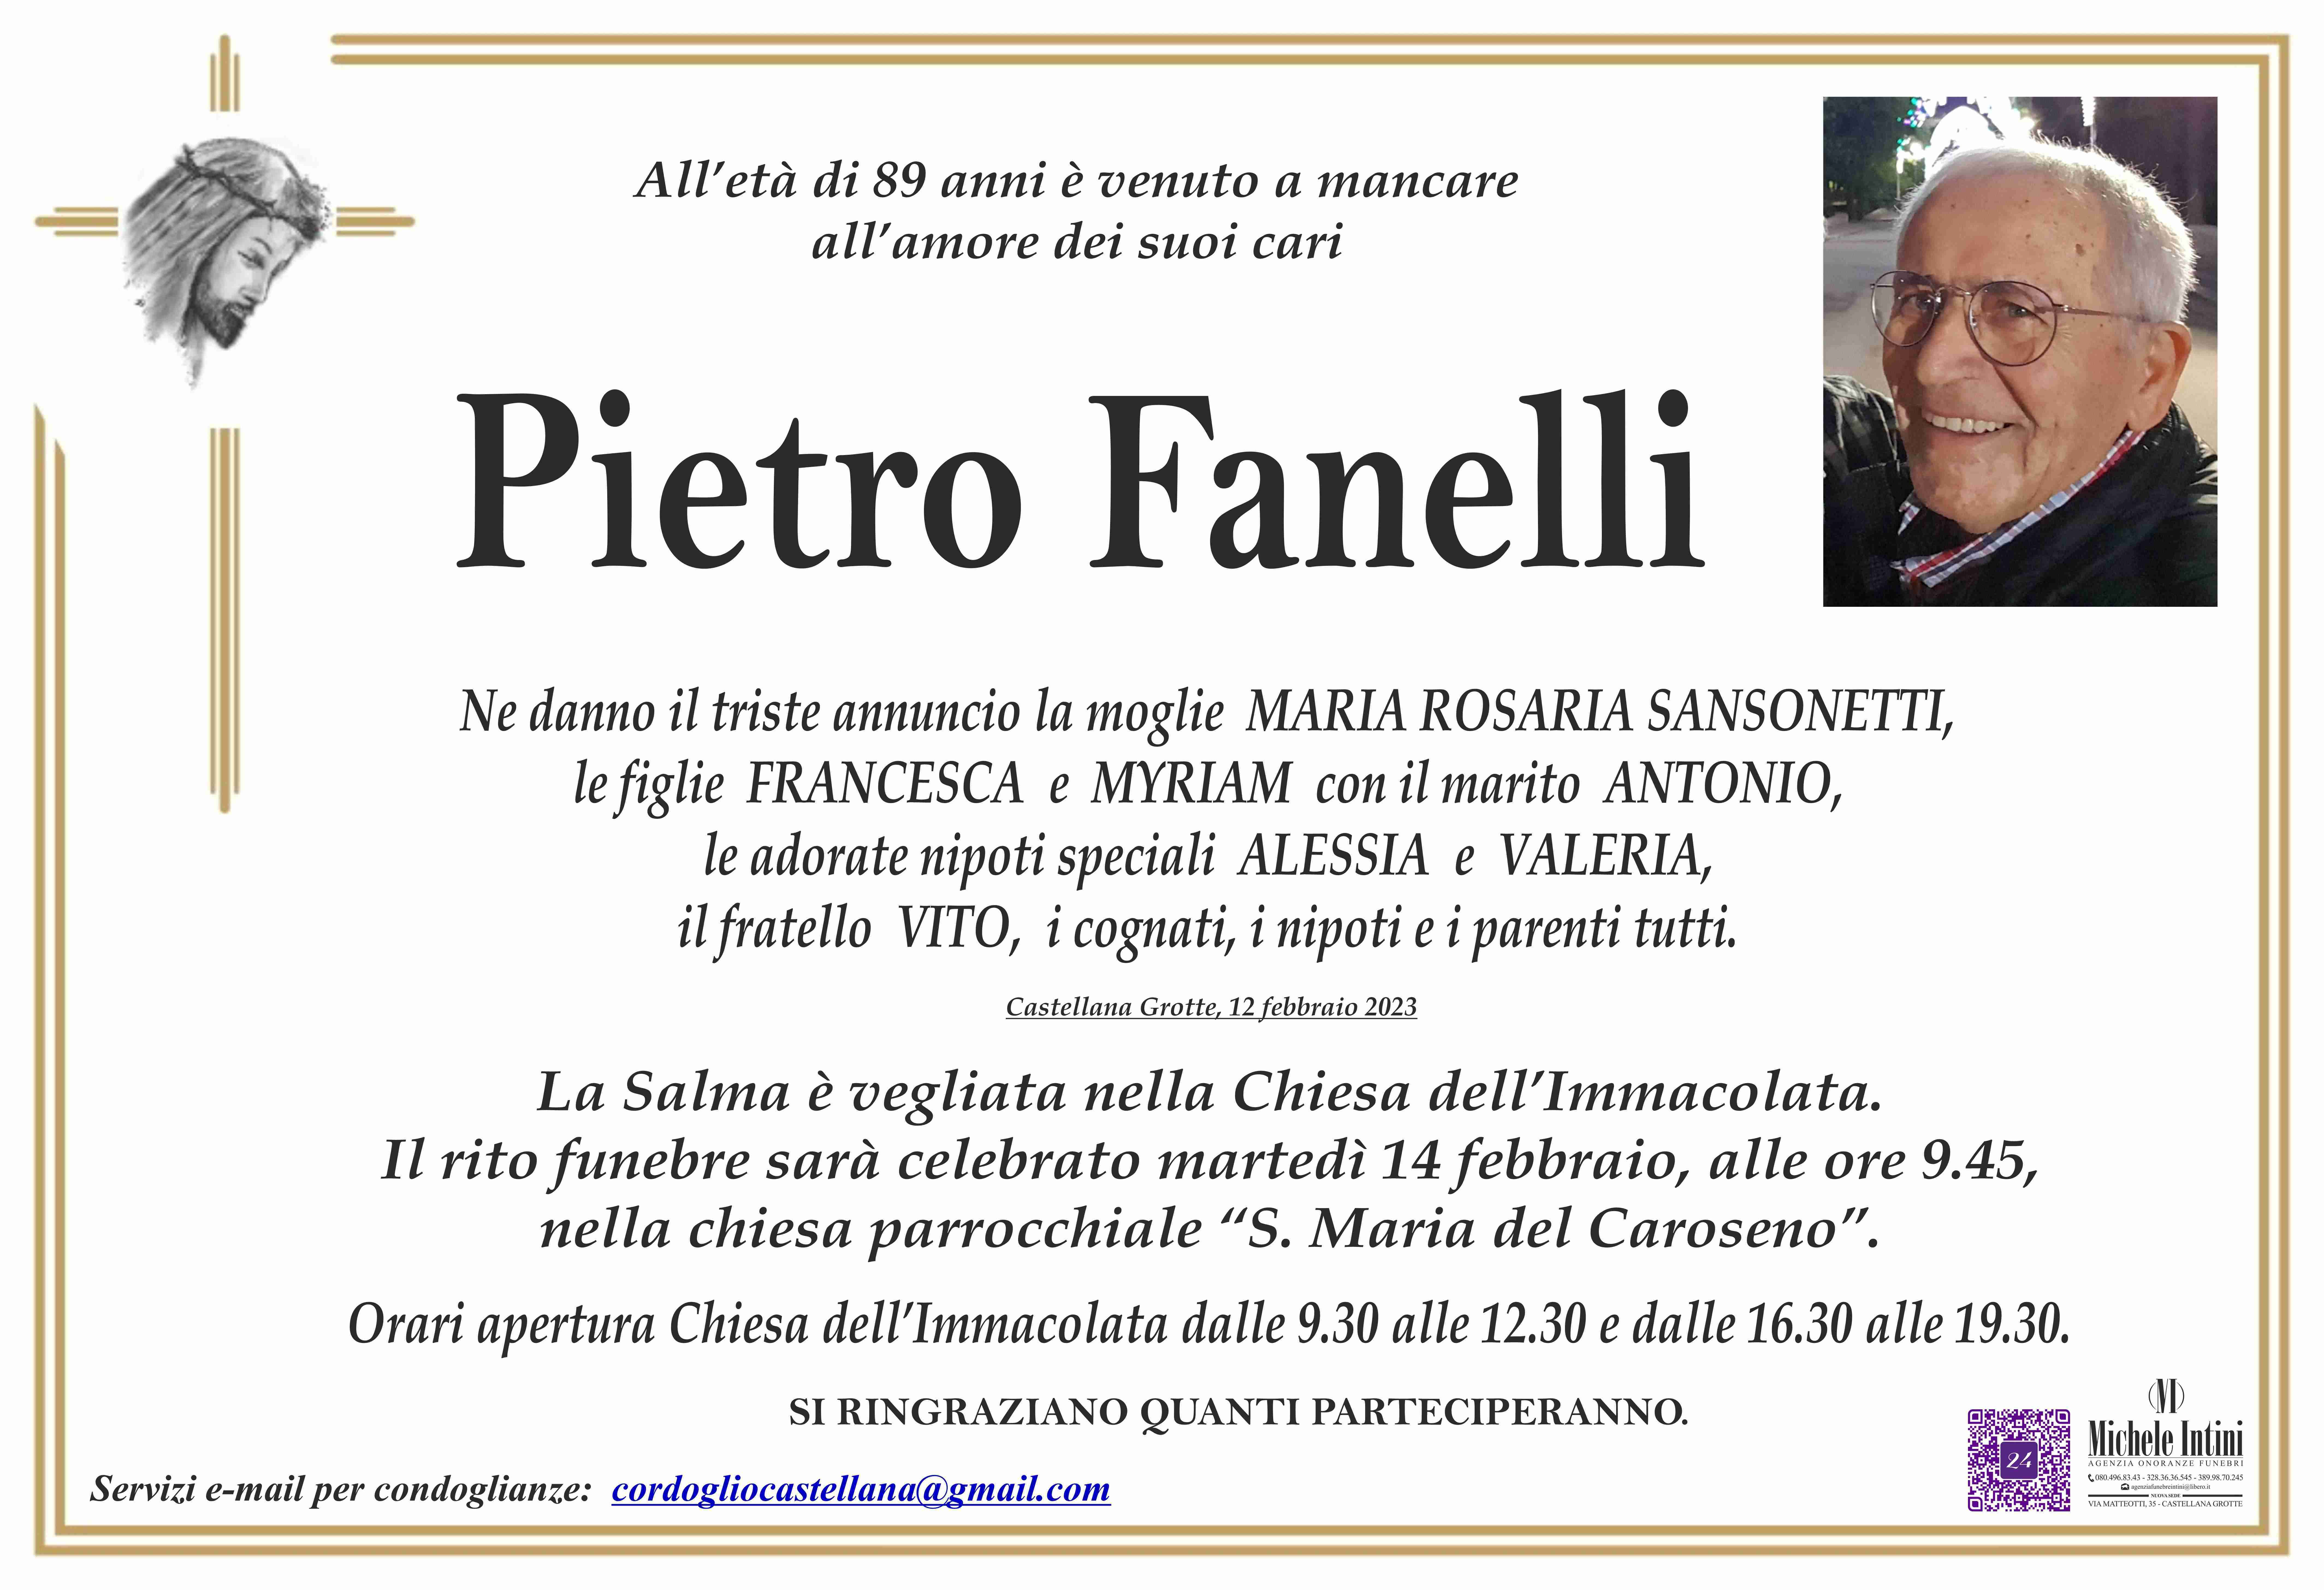 Pietro fanelli